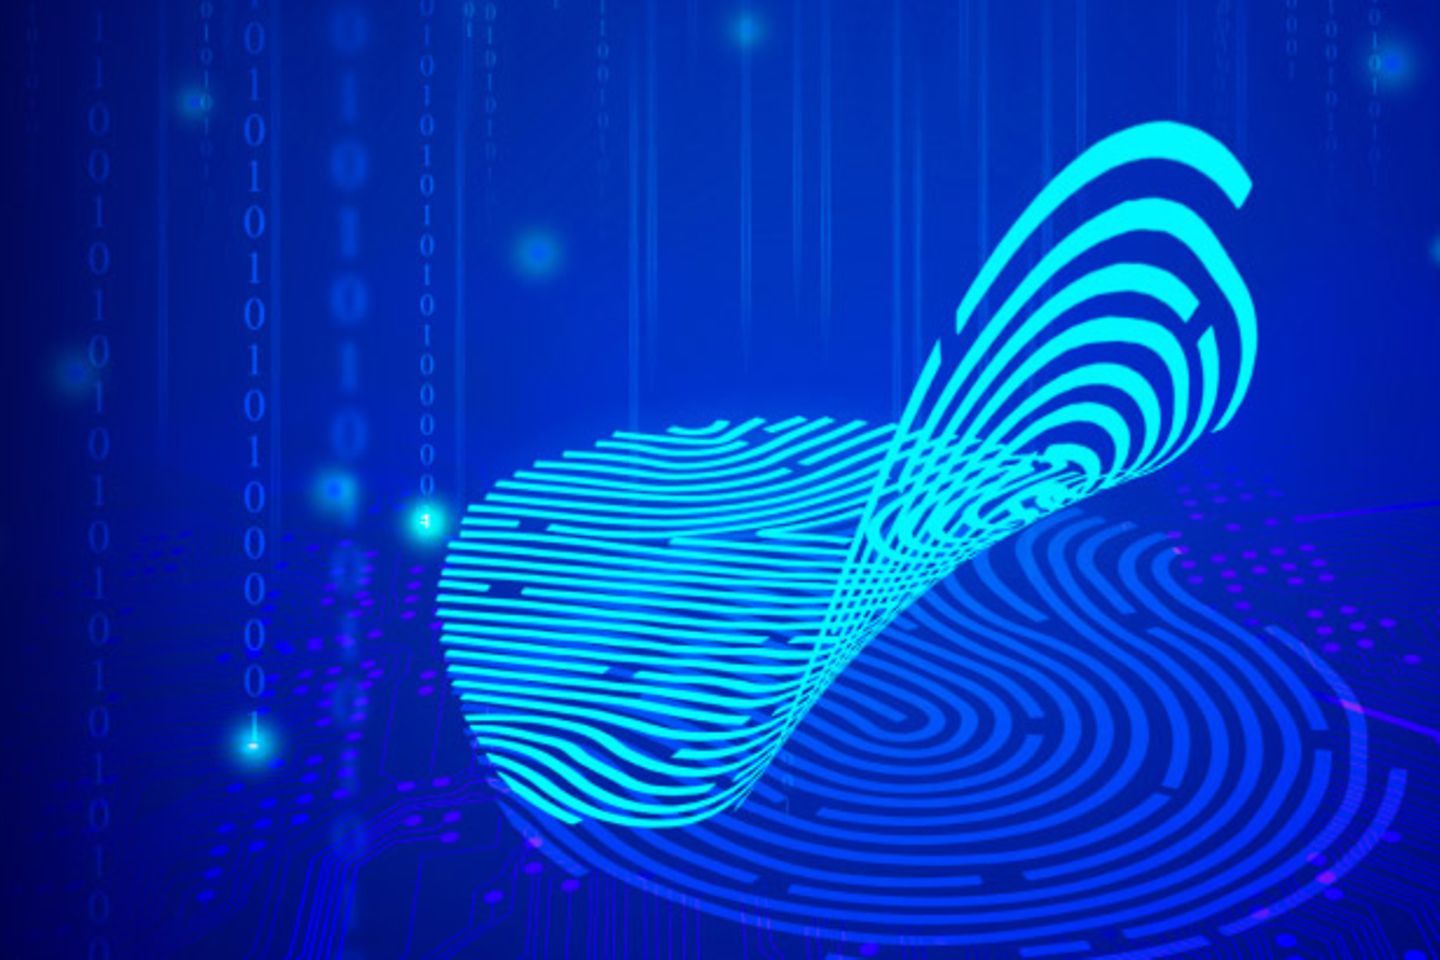 Digital fingerprint on a blue background